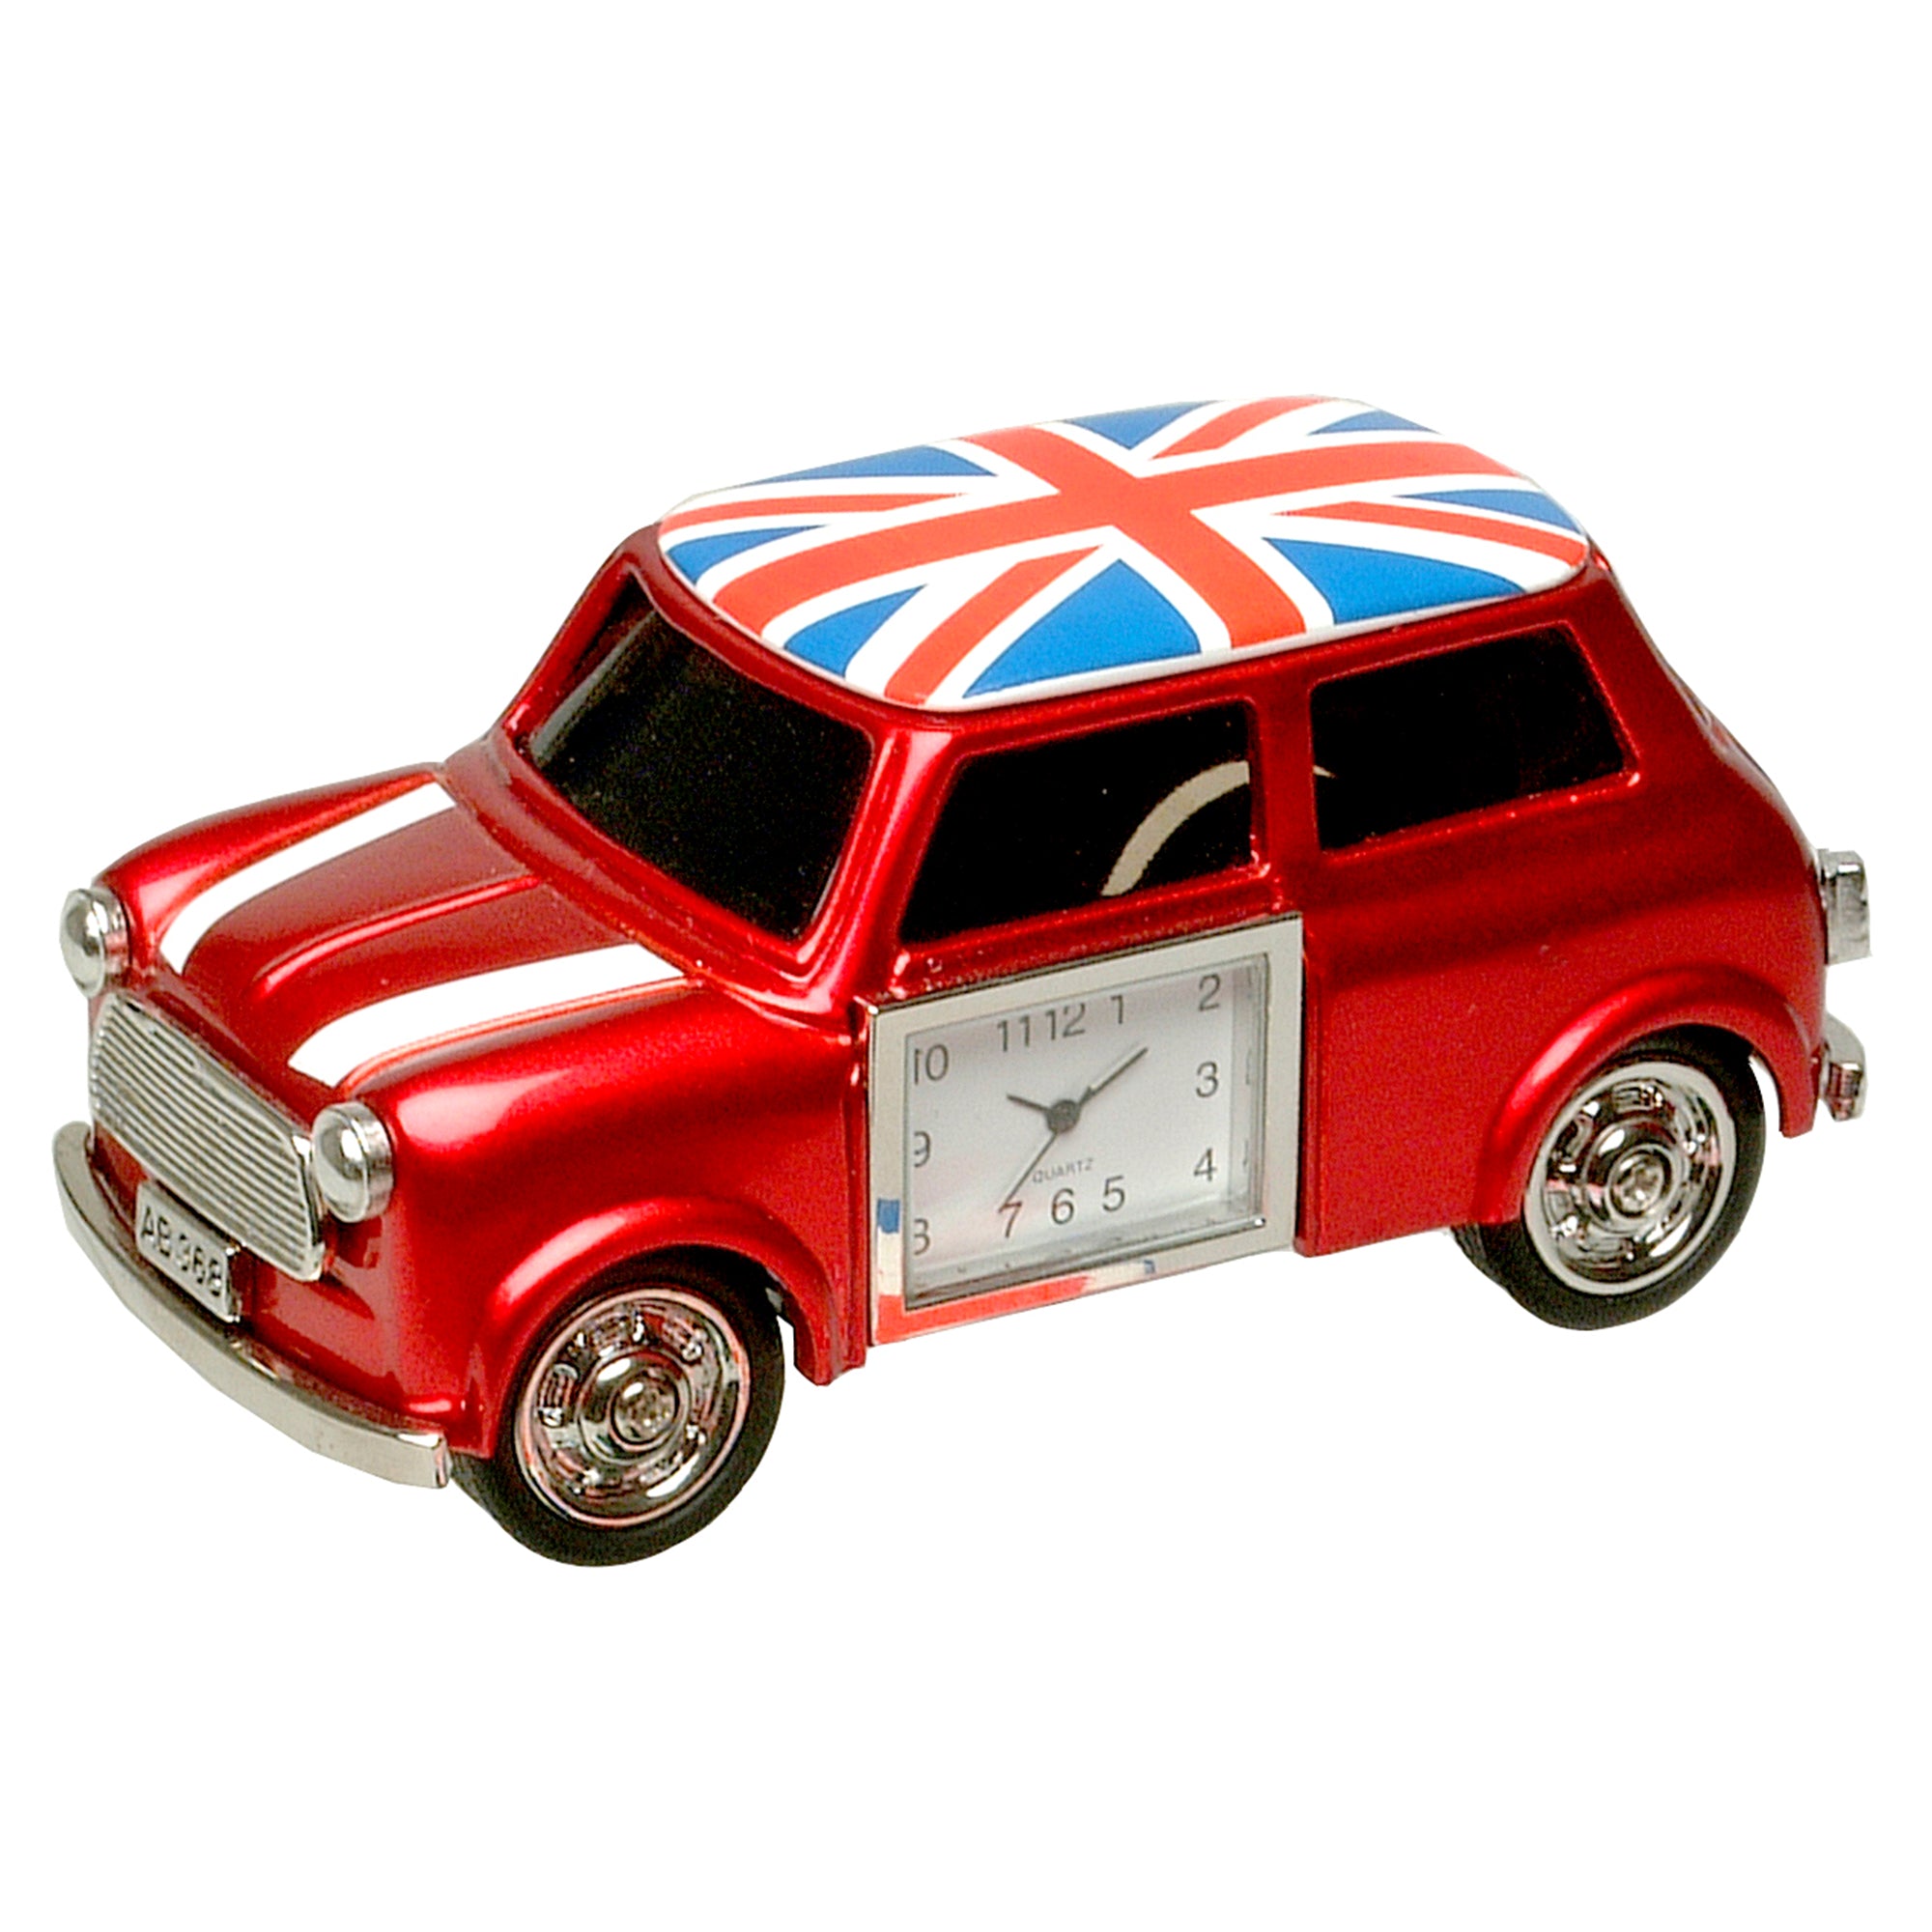 Miniature Classic Red Car Clock